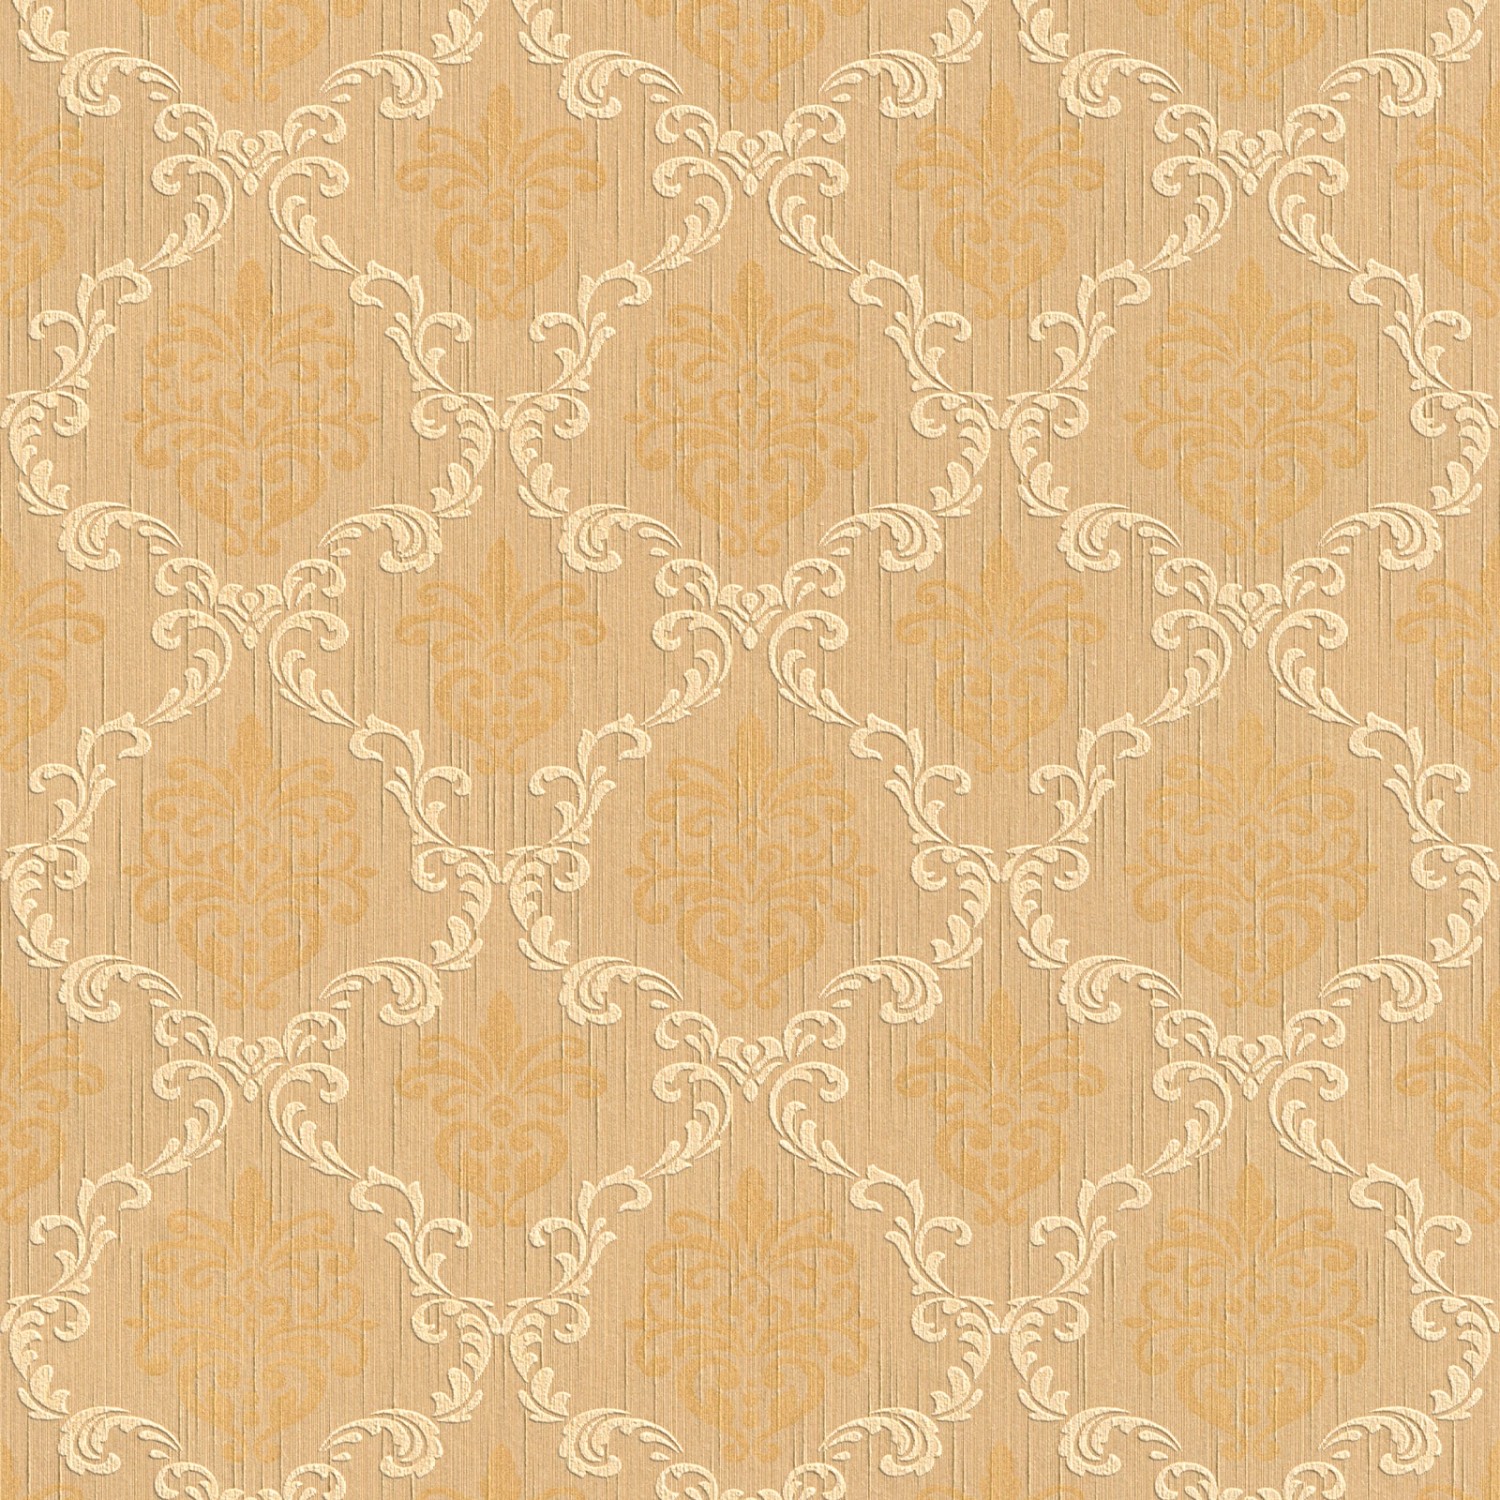 Bricoflor Barock Tapete in Gold Gelb Elegant Vlies Textiltapete mit Ornament Muster für Wohnzimmer und Schlafzimmer Edle Vlies Mustertapete mit Textil von Bricoflor